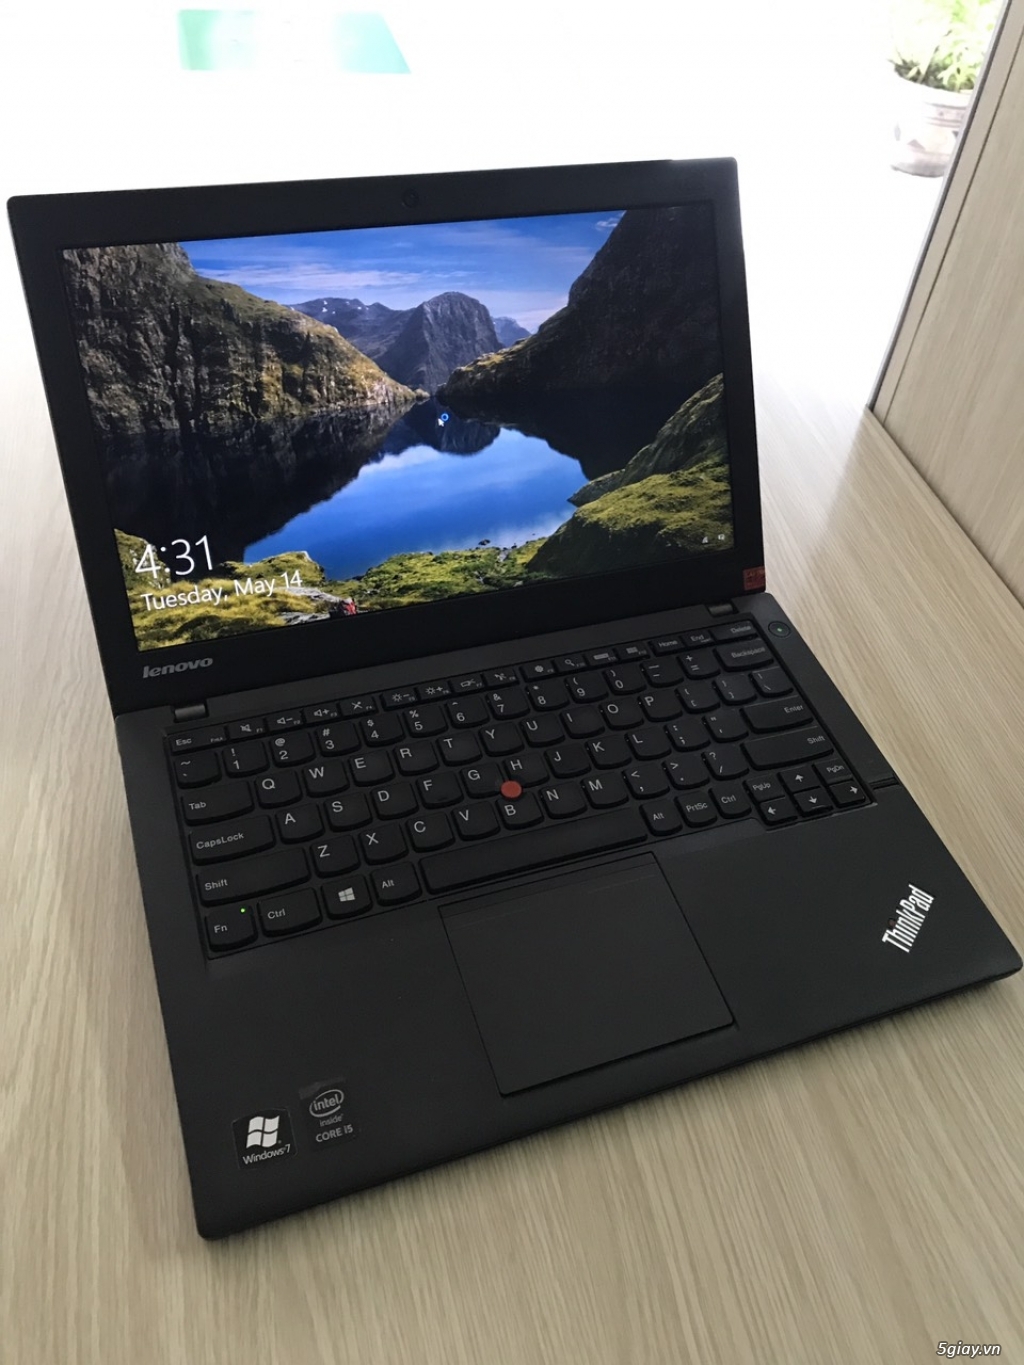 ThinkPad X240 core i5 4200 SSD 180G zin theo máy - 3